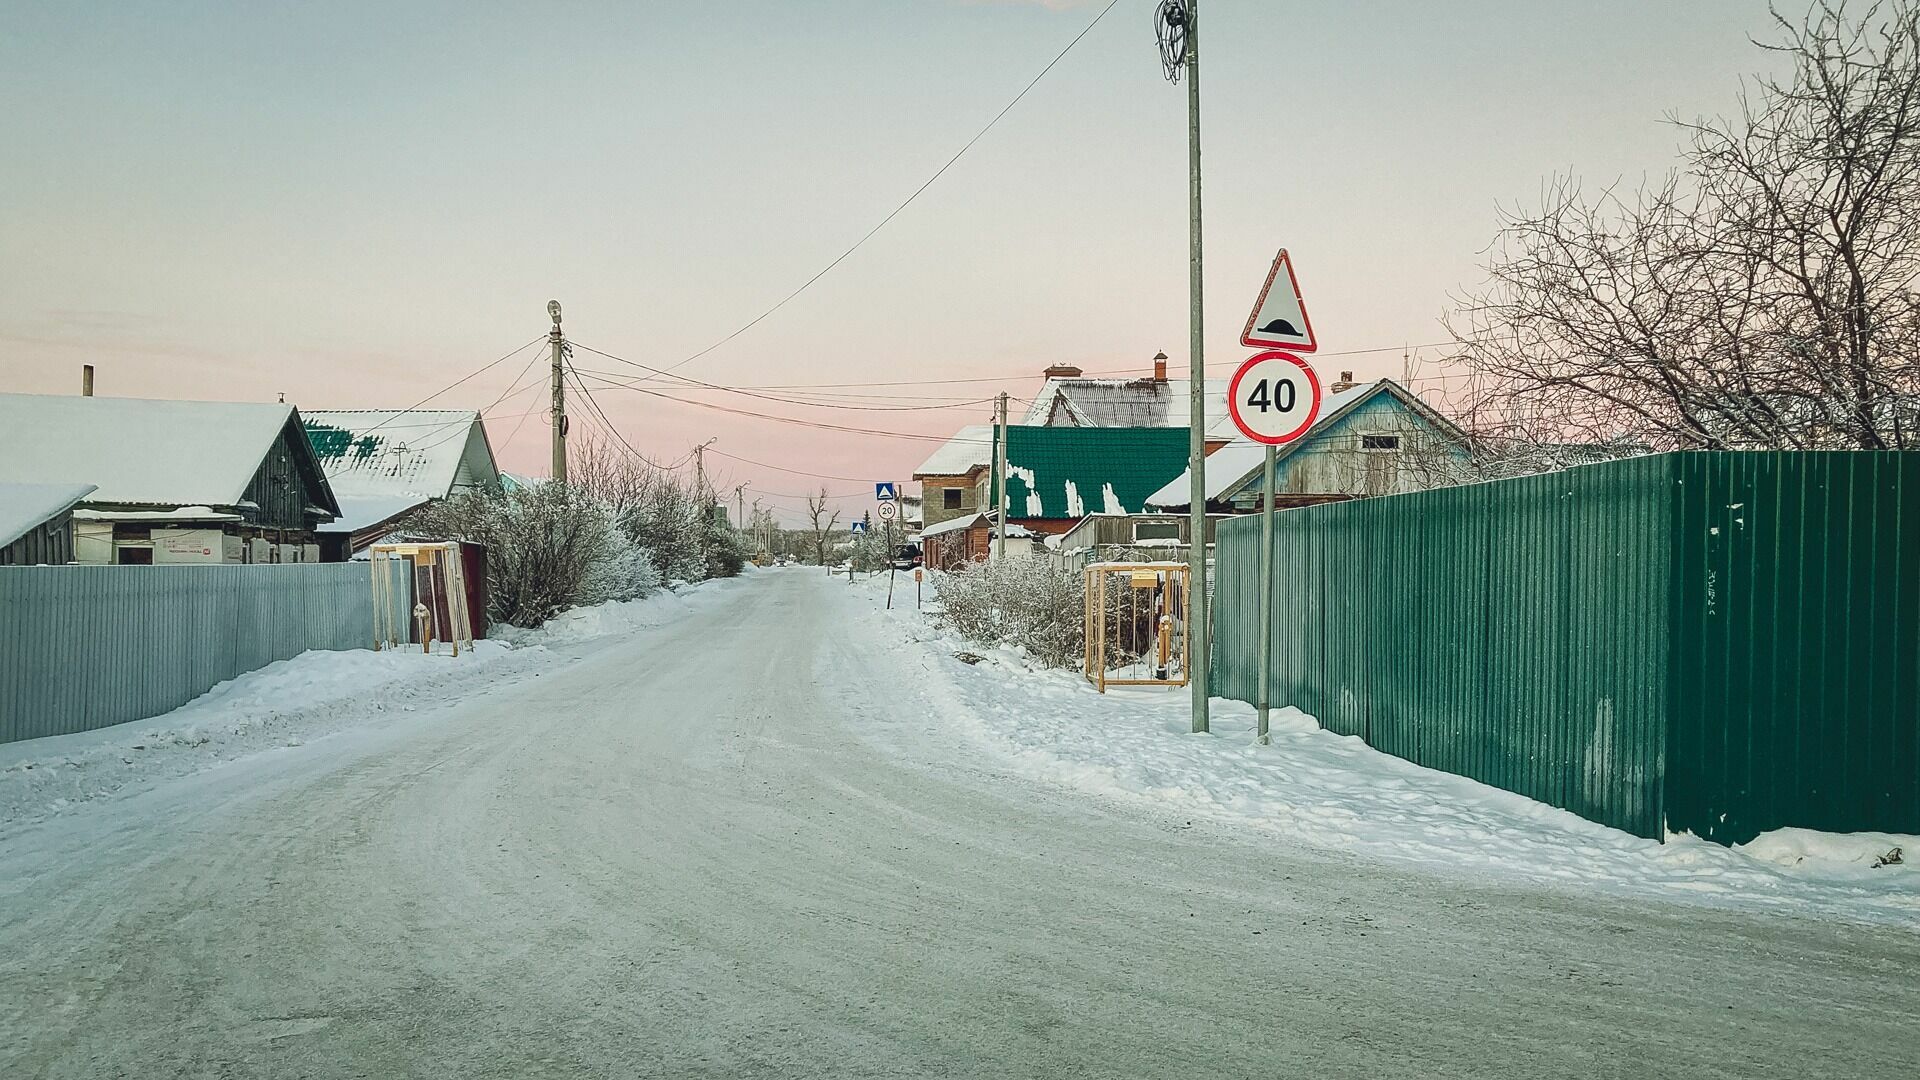 Депутаты Мосгордумы решили спасти нижегородскую деревню при помощи фейковых страниц